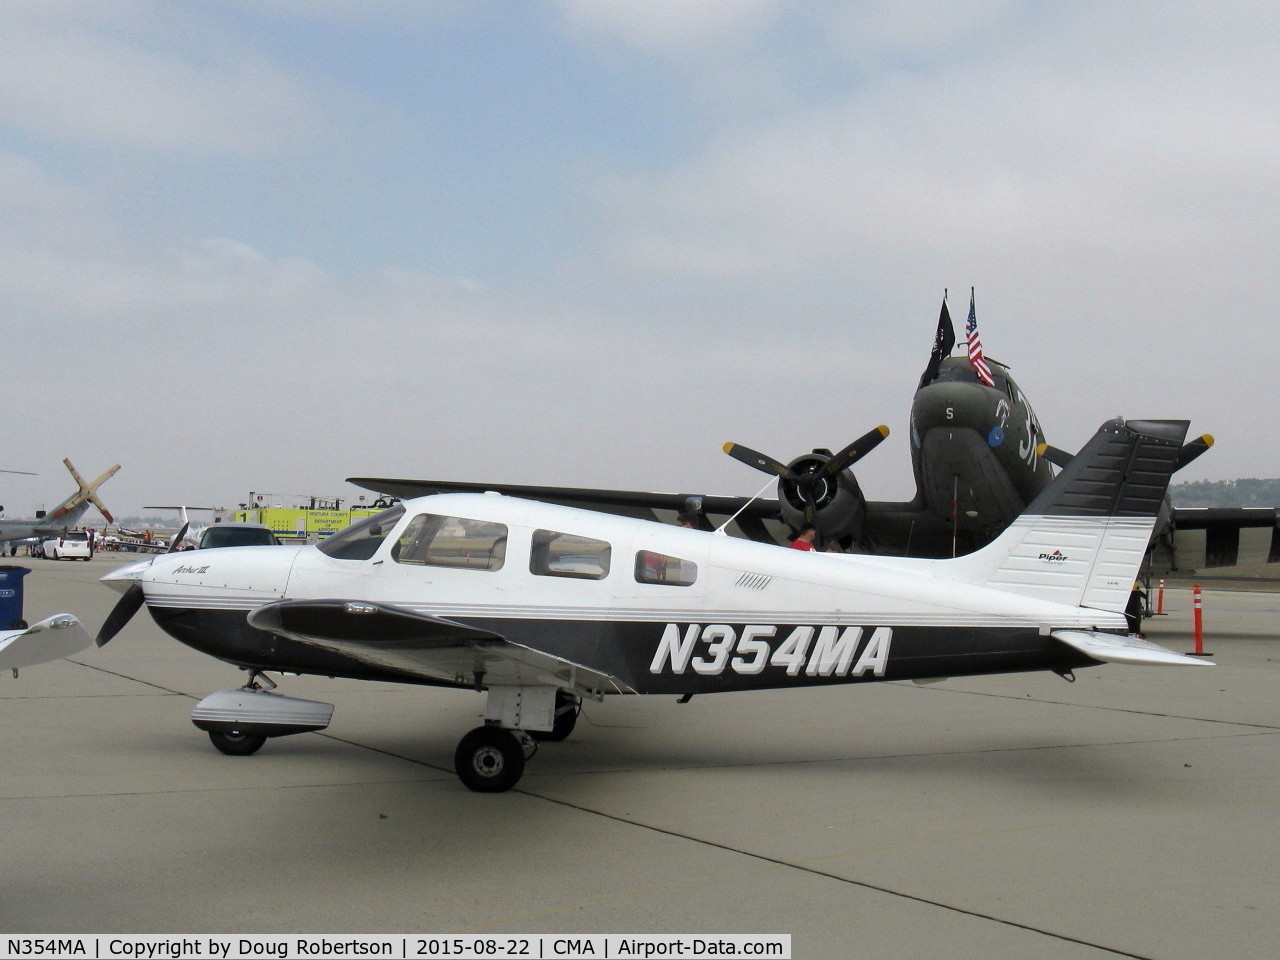 N354MA, 2003 Piper PA-28-181 Archer II C/N 2843545, 2003 Piper PA-28-181 ARCHER II, Lycoming O-360-A4M 180 Hp